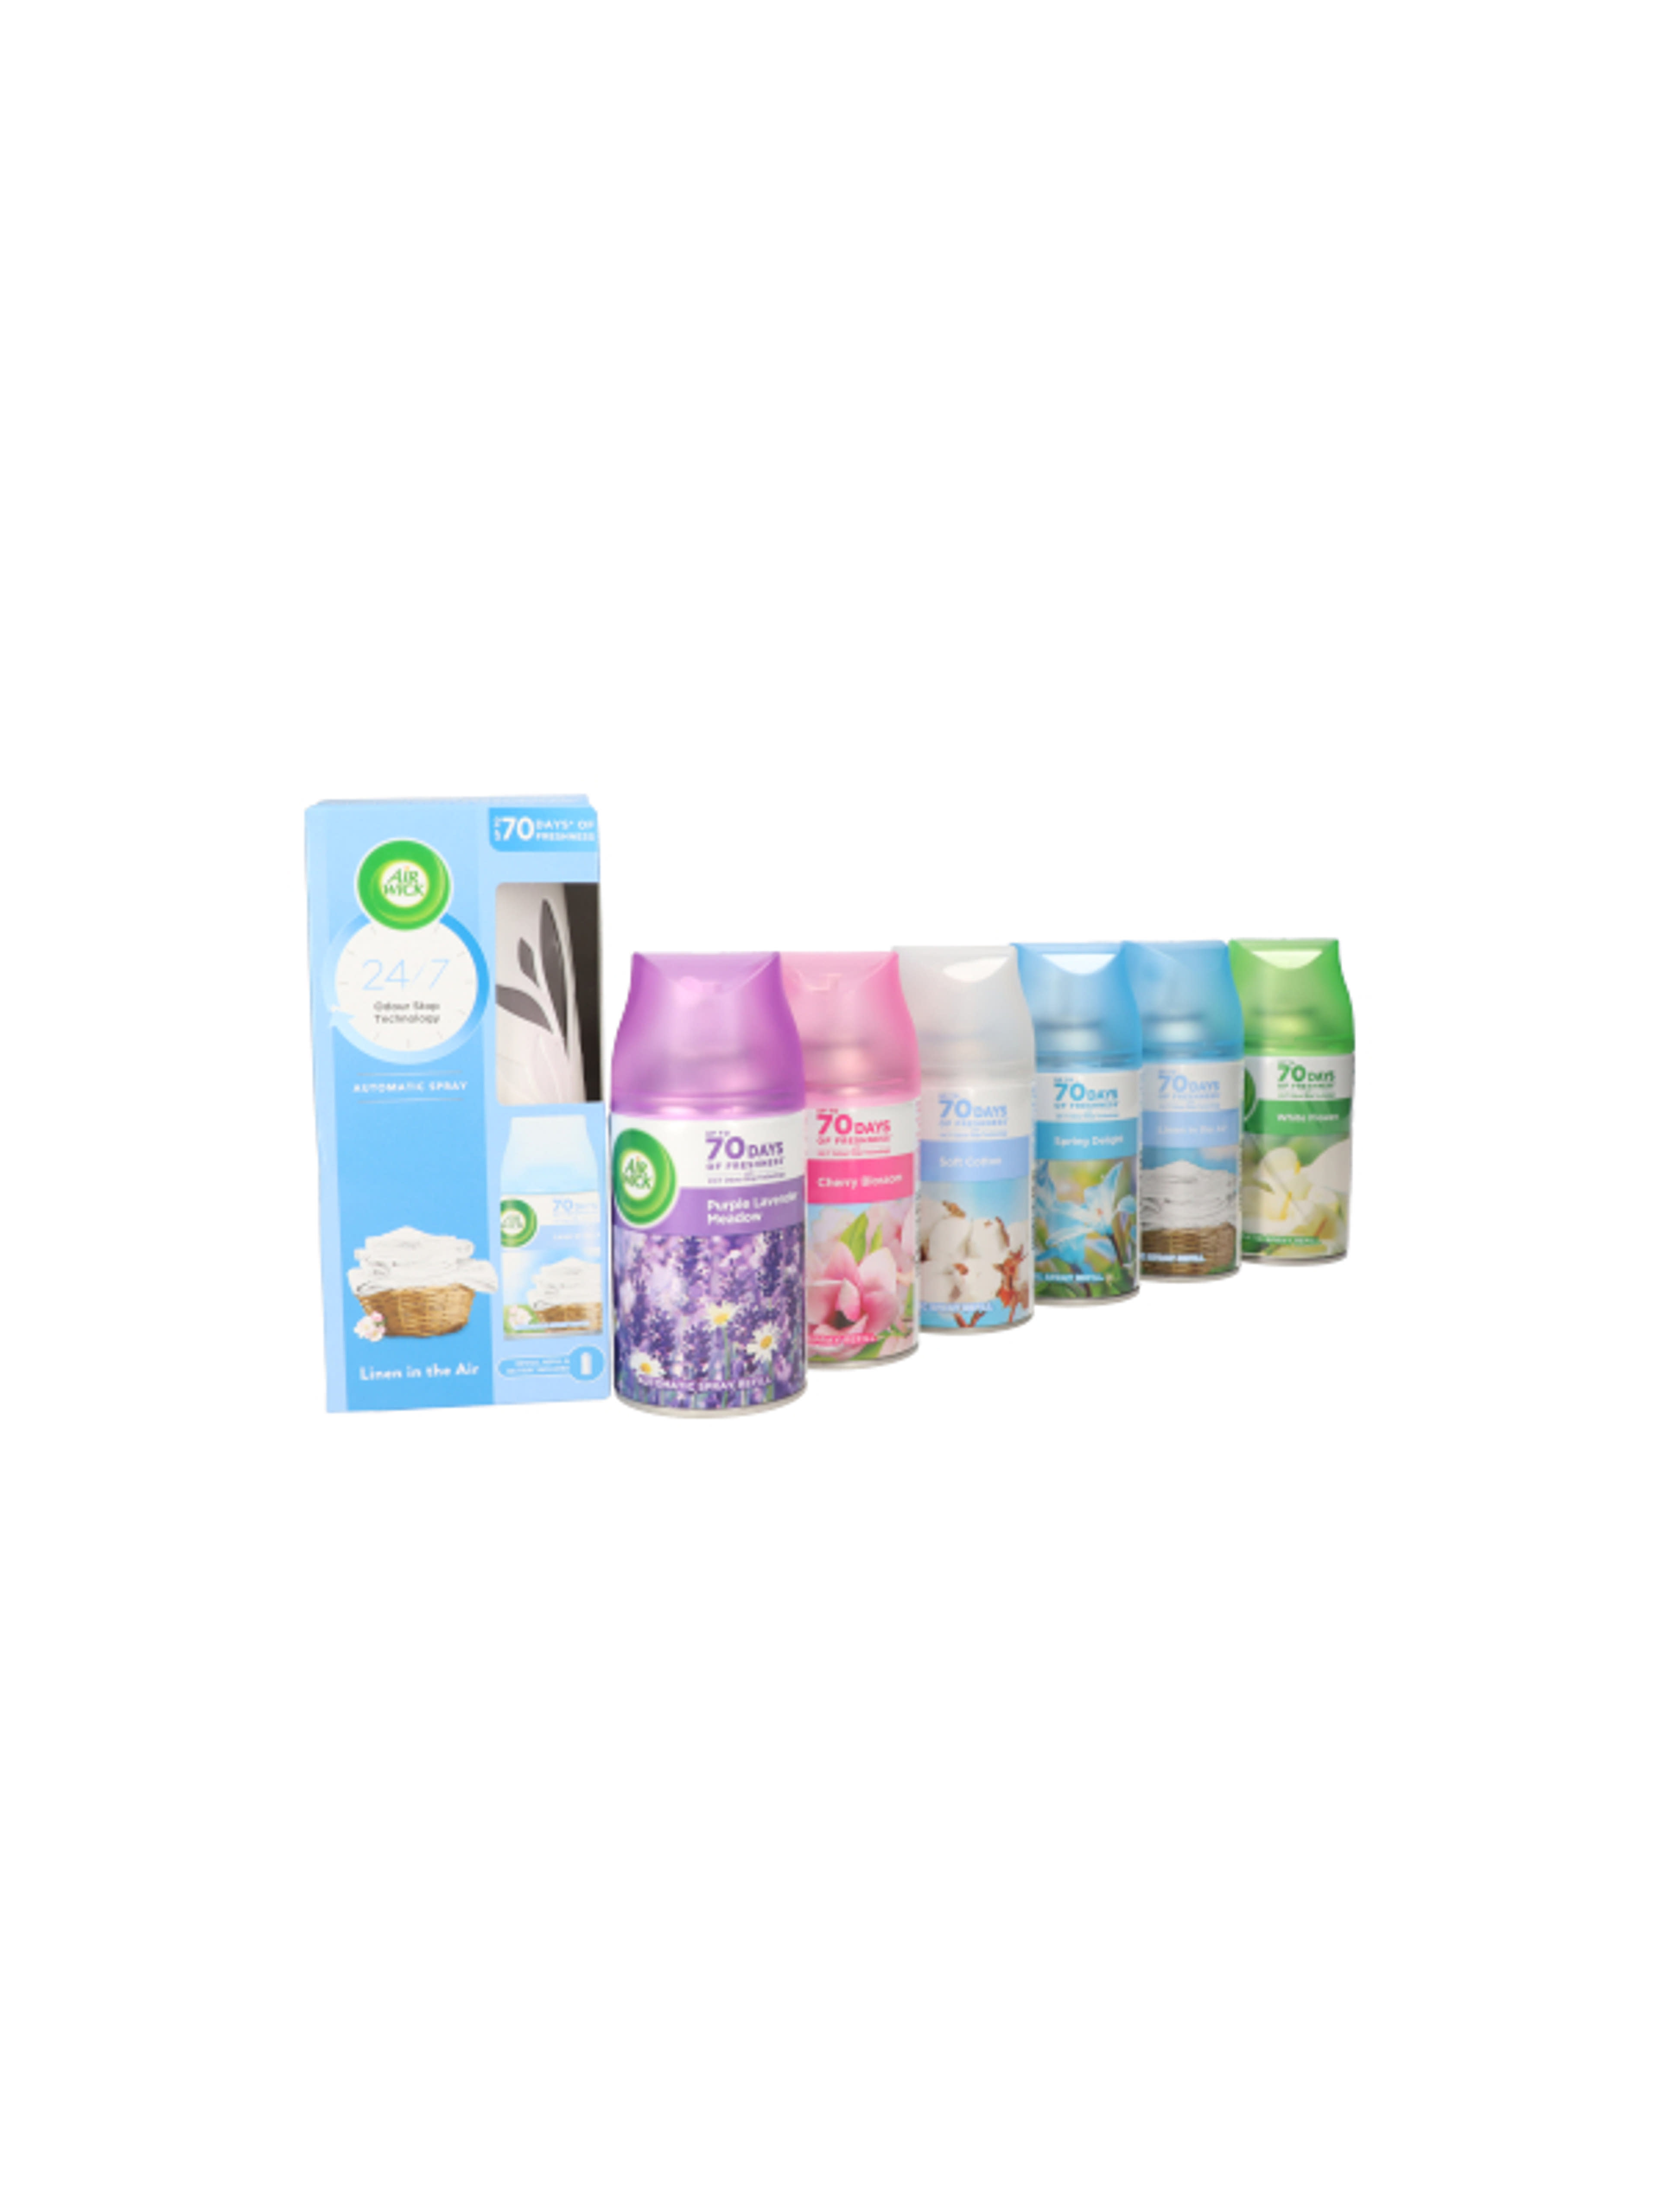 Air Wick Freshmatic Life Scents légfrissítő csomag, 6 db utántöltő (különböző illatokban) + készülék - 1 db